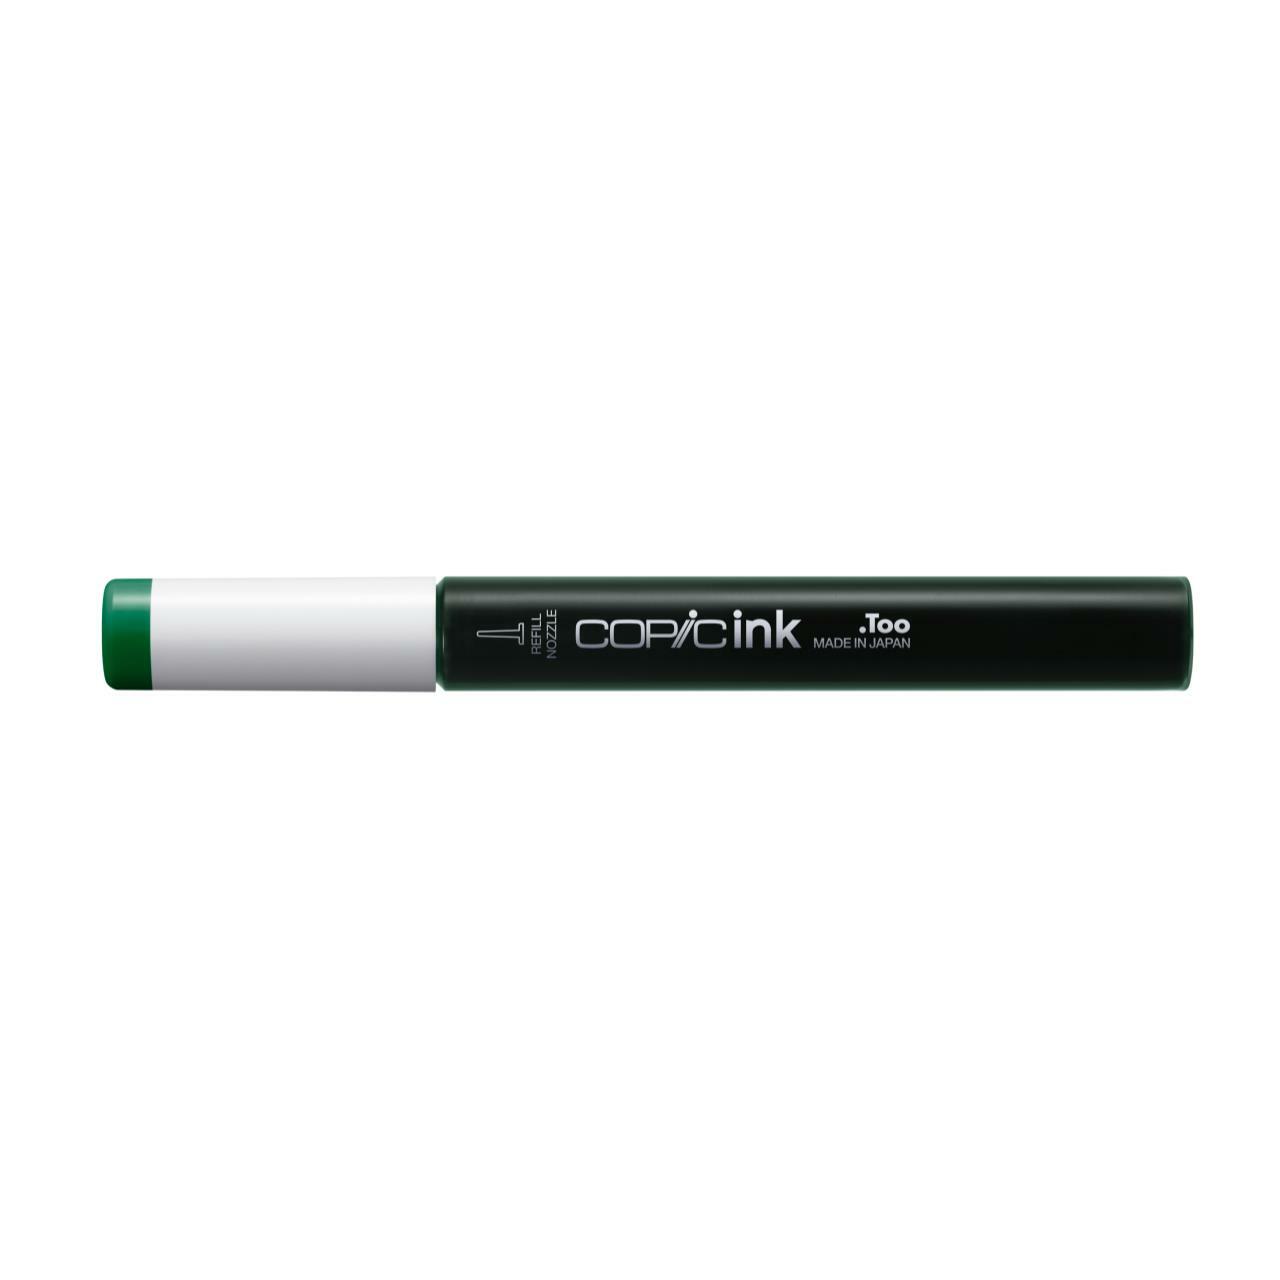 Заправка для маркеров COPIC 12 мл цв. G19 парижская зелень заправка для маркеров copic 12 мл цв yr14 карамель